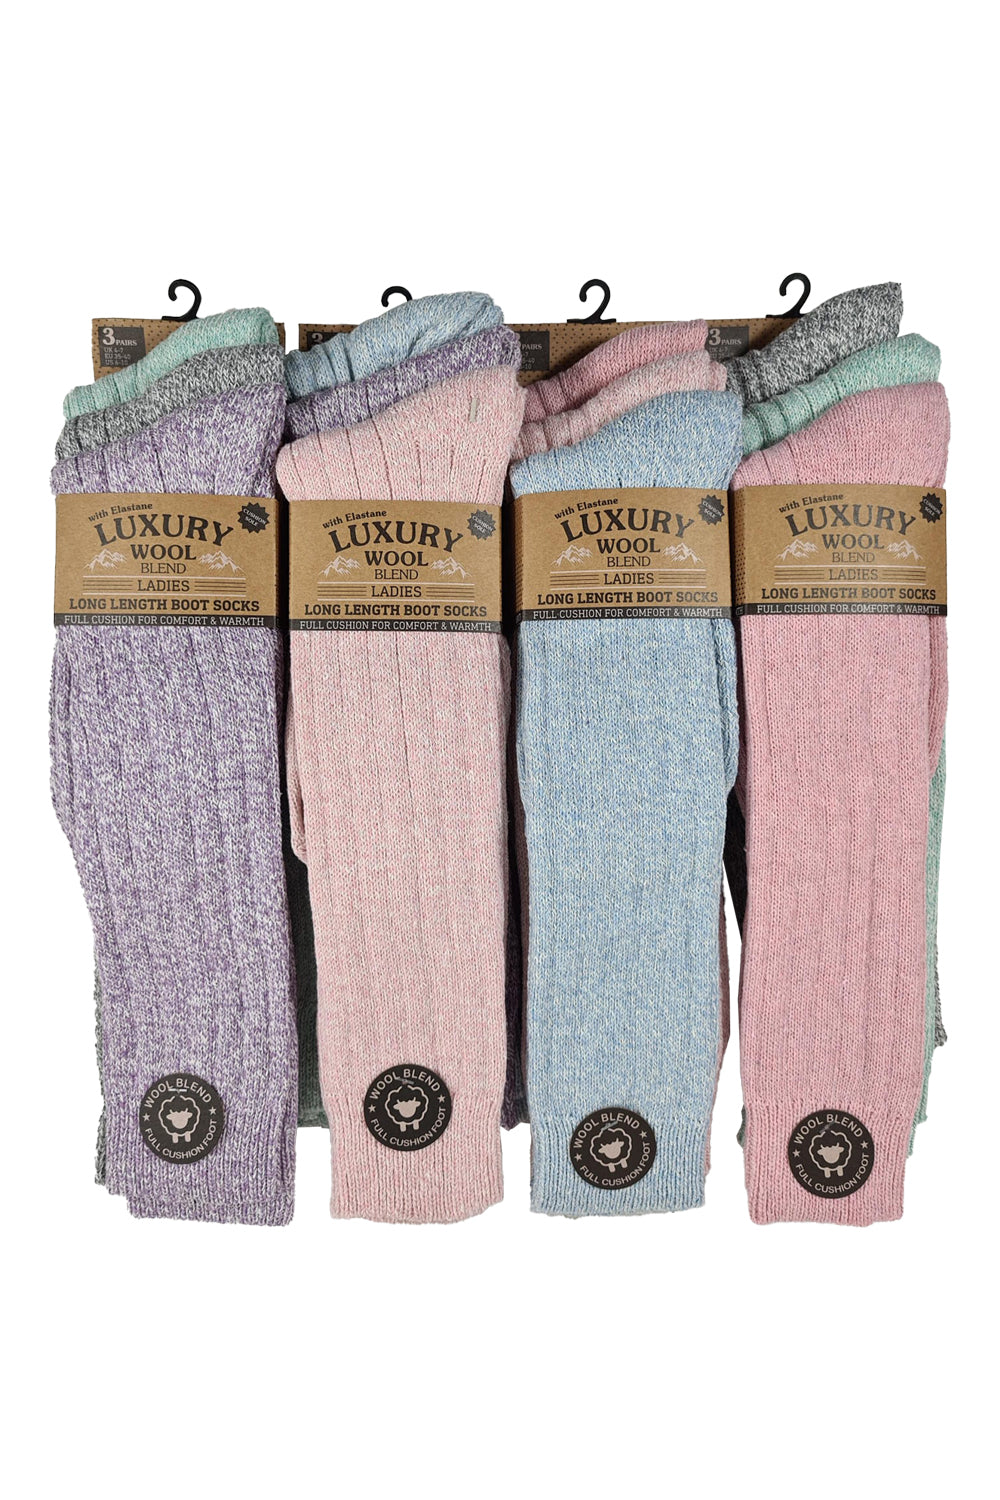 Luxury Wool Blend Boot Socks (Pack of 3)